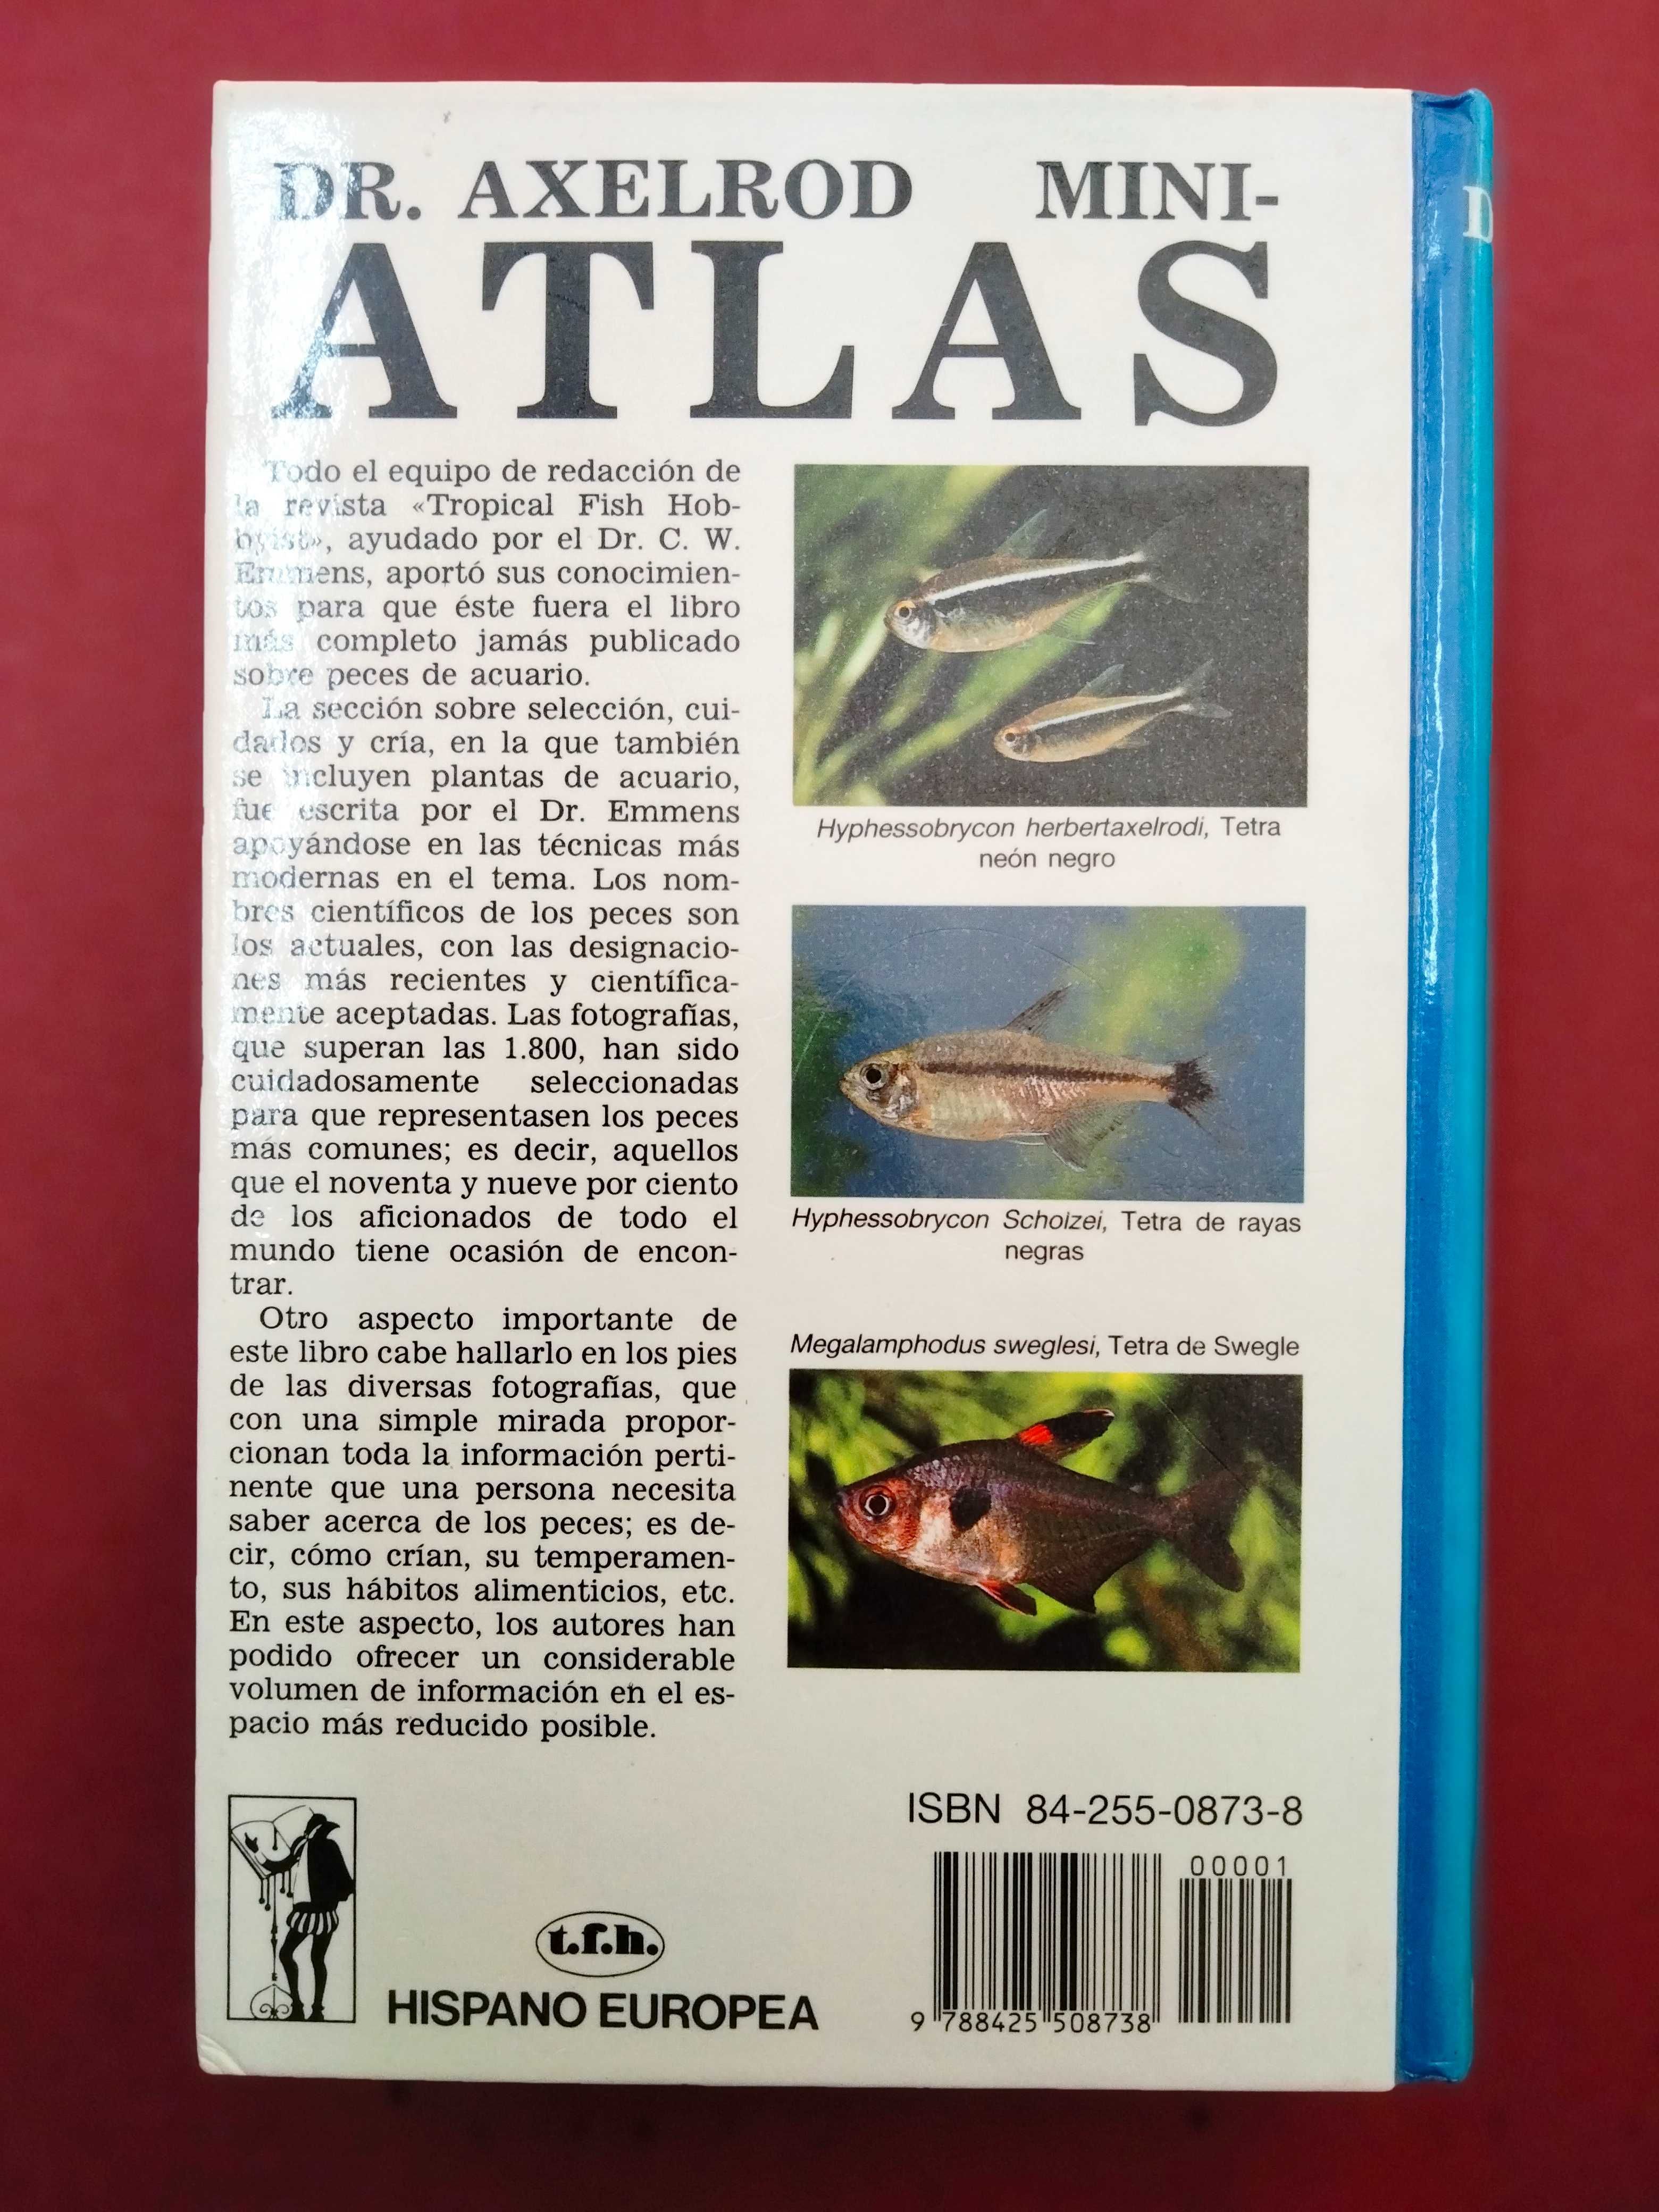 Mini-Atlas de Peces de Acuario de Agua Dulce